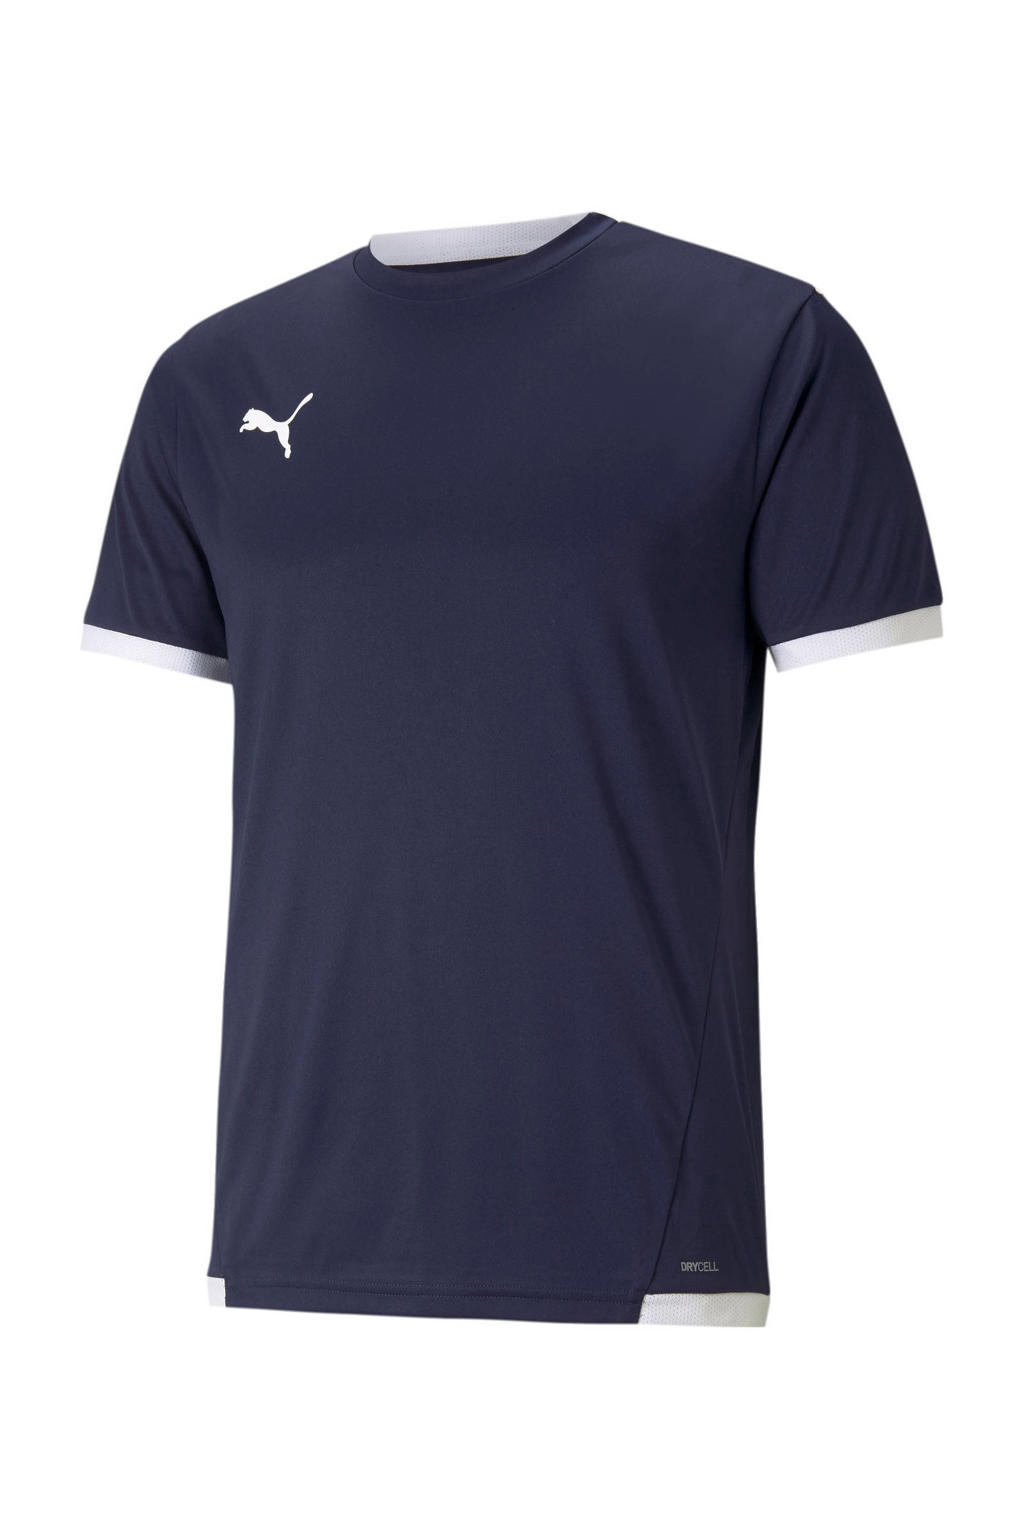 Donkerblauw en witte heren Puma Senior voetbalshirt teamLIGA van polyester met korte mouwen en ronde hals